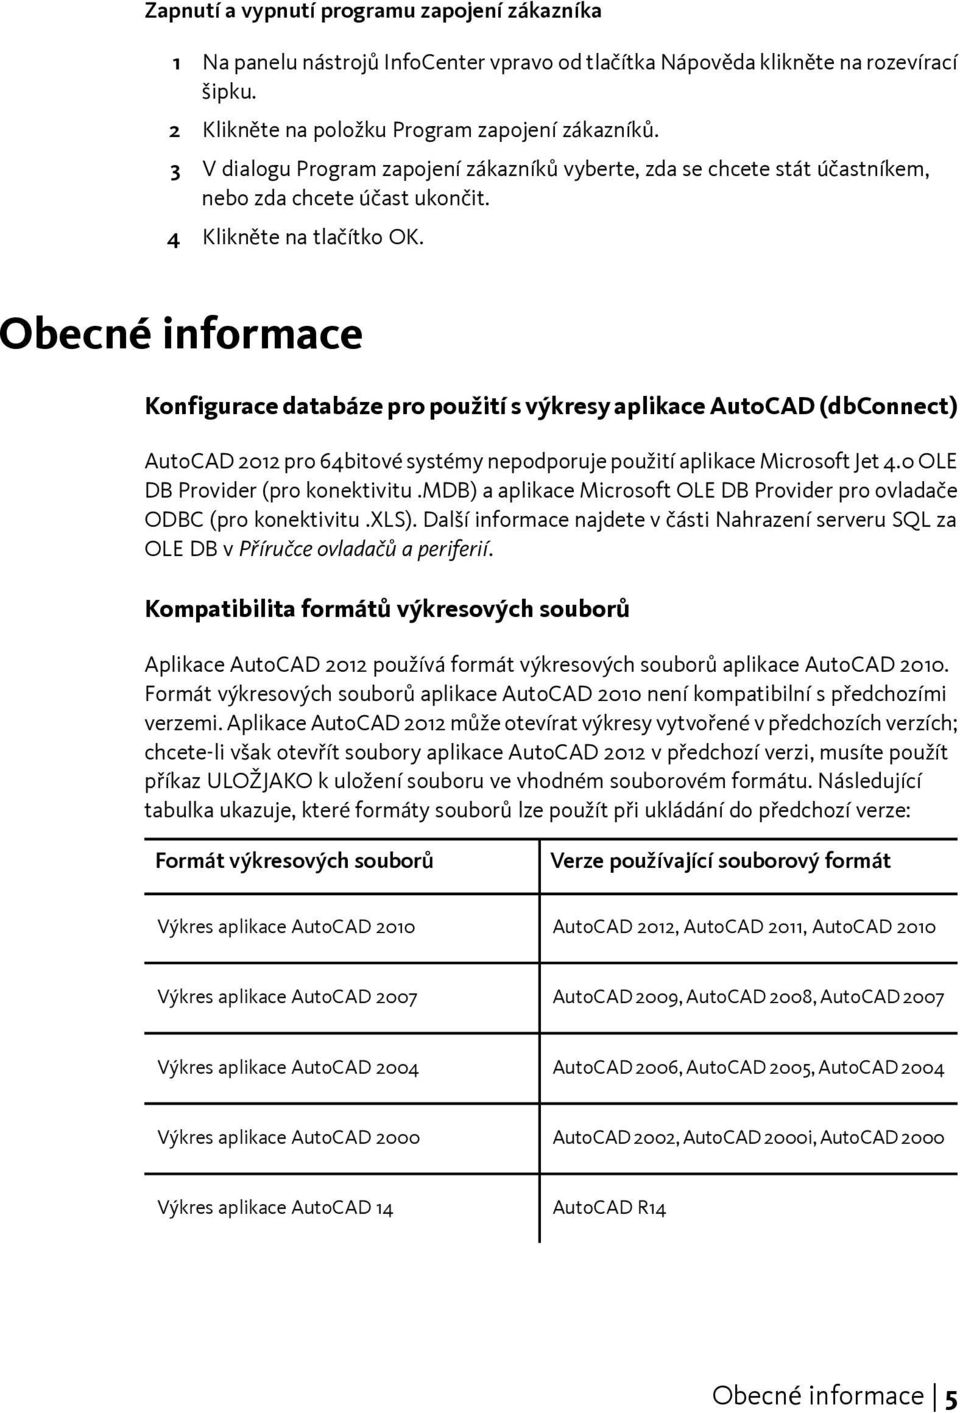 Obecné informace Konfigurace databáze pro použití s výkresy aplikace AutoCAD (dbconnect) AutoCAD 2012 pro 64bitové systémy nepodporuje použití aplikace Microsoft Jet 4.